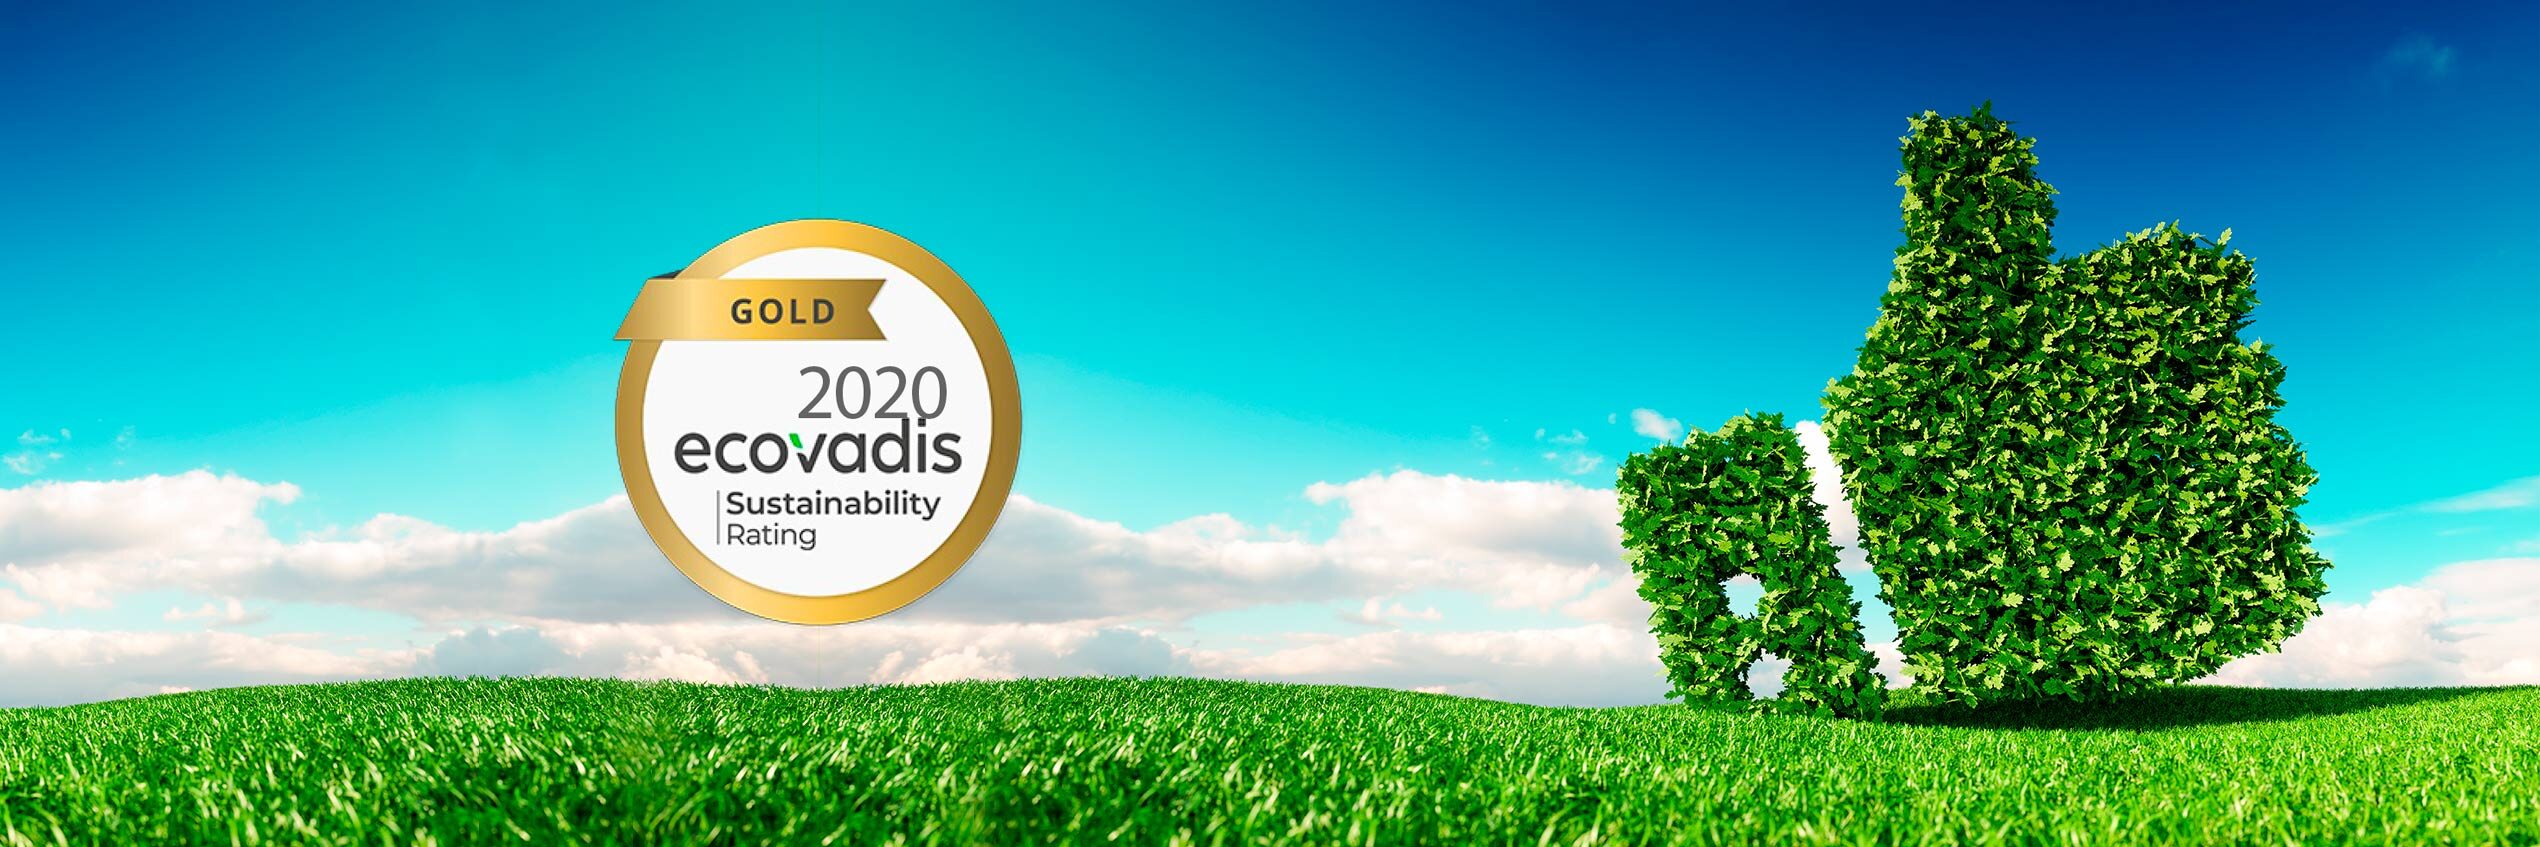 Saint-Louis site achieves Gold level on the EcoVadis CSR platform